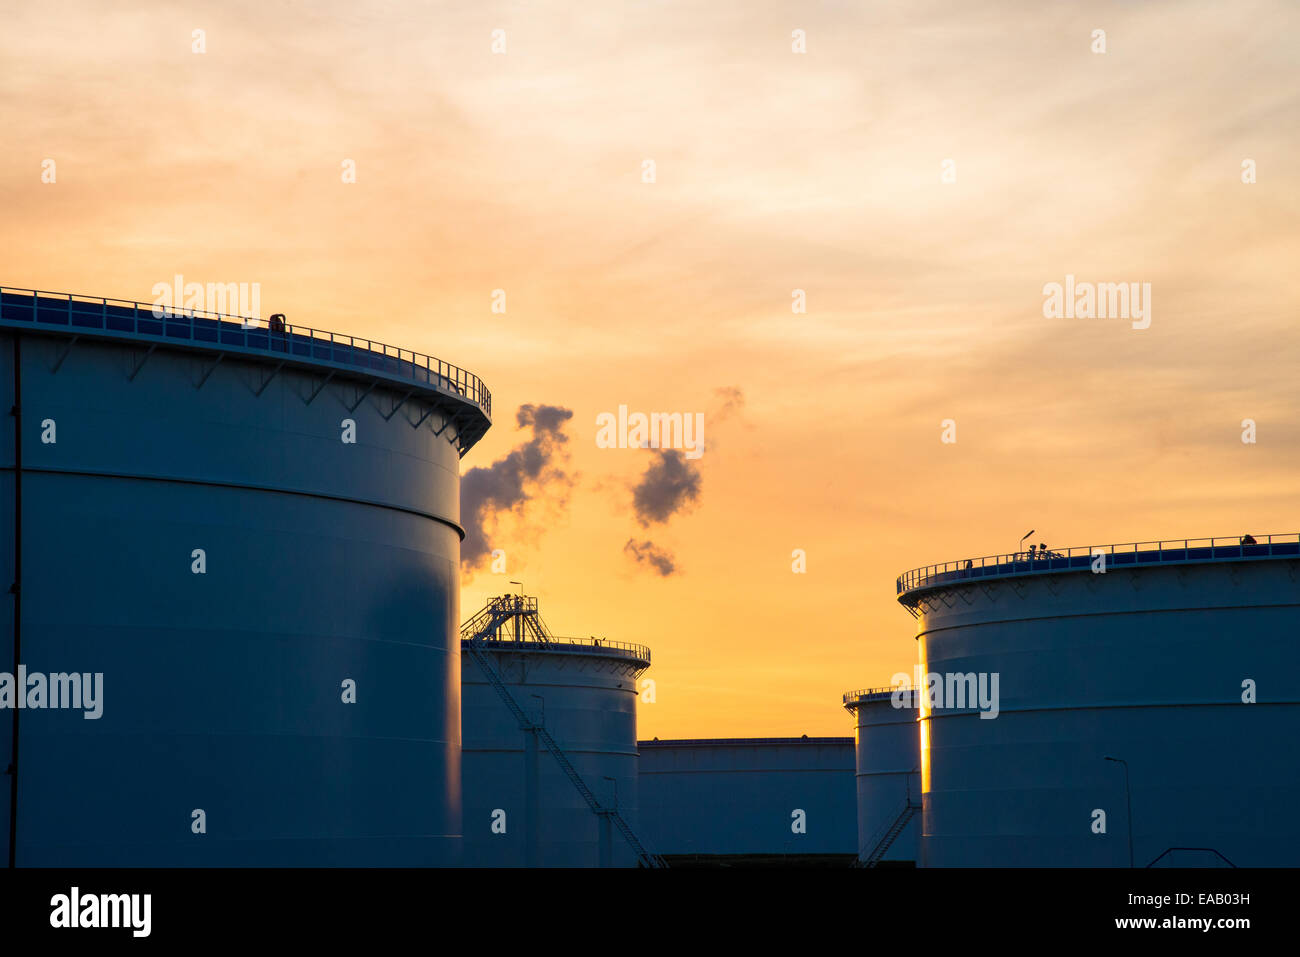 Les réservoirs de stockage de pétrole au port de Rotterdam Hollande Banque D'Images